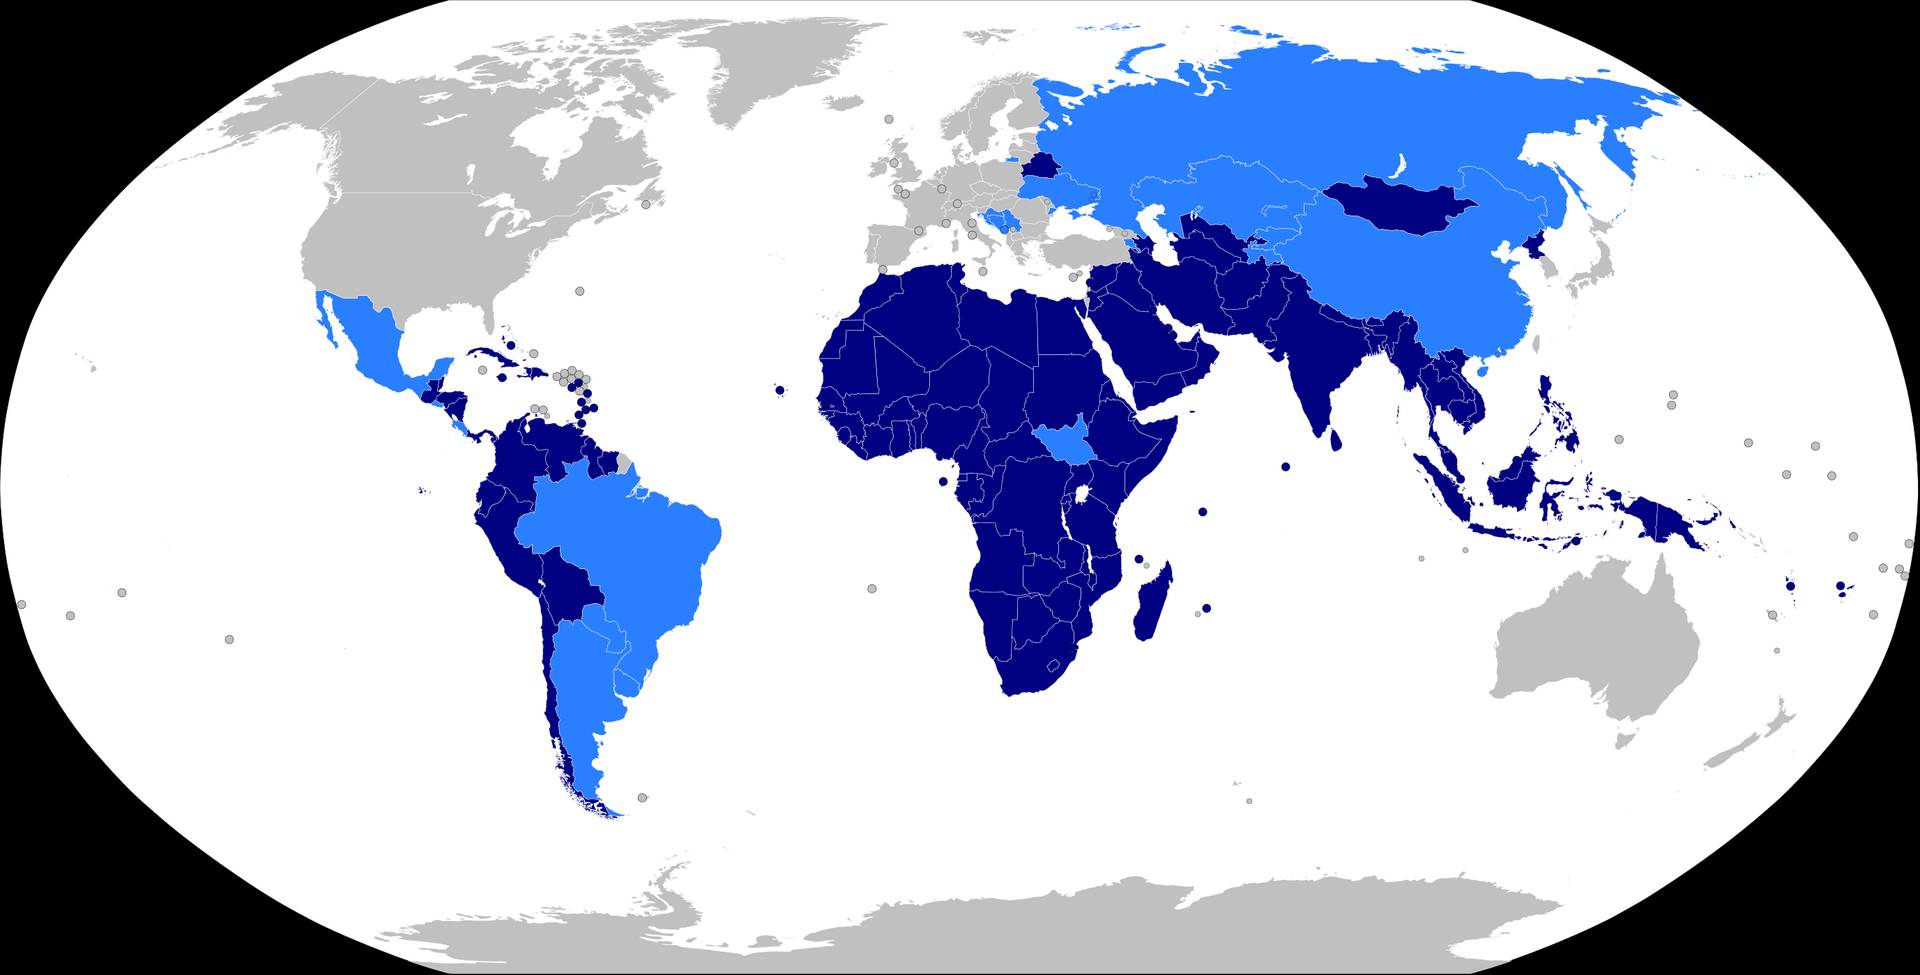 Карта членов (темно-синий) и наблюдателей (голубой) Движения неприсоединения